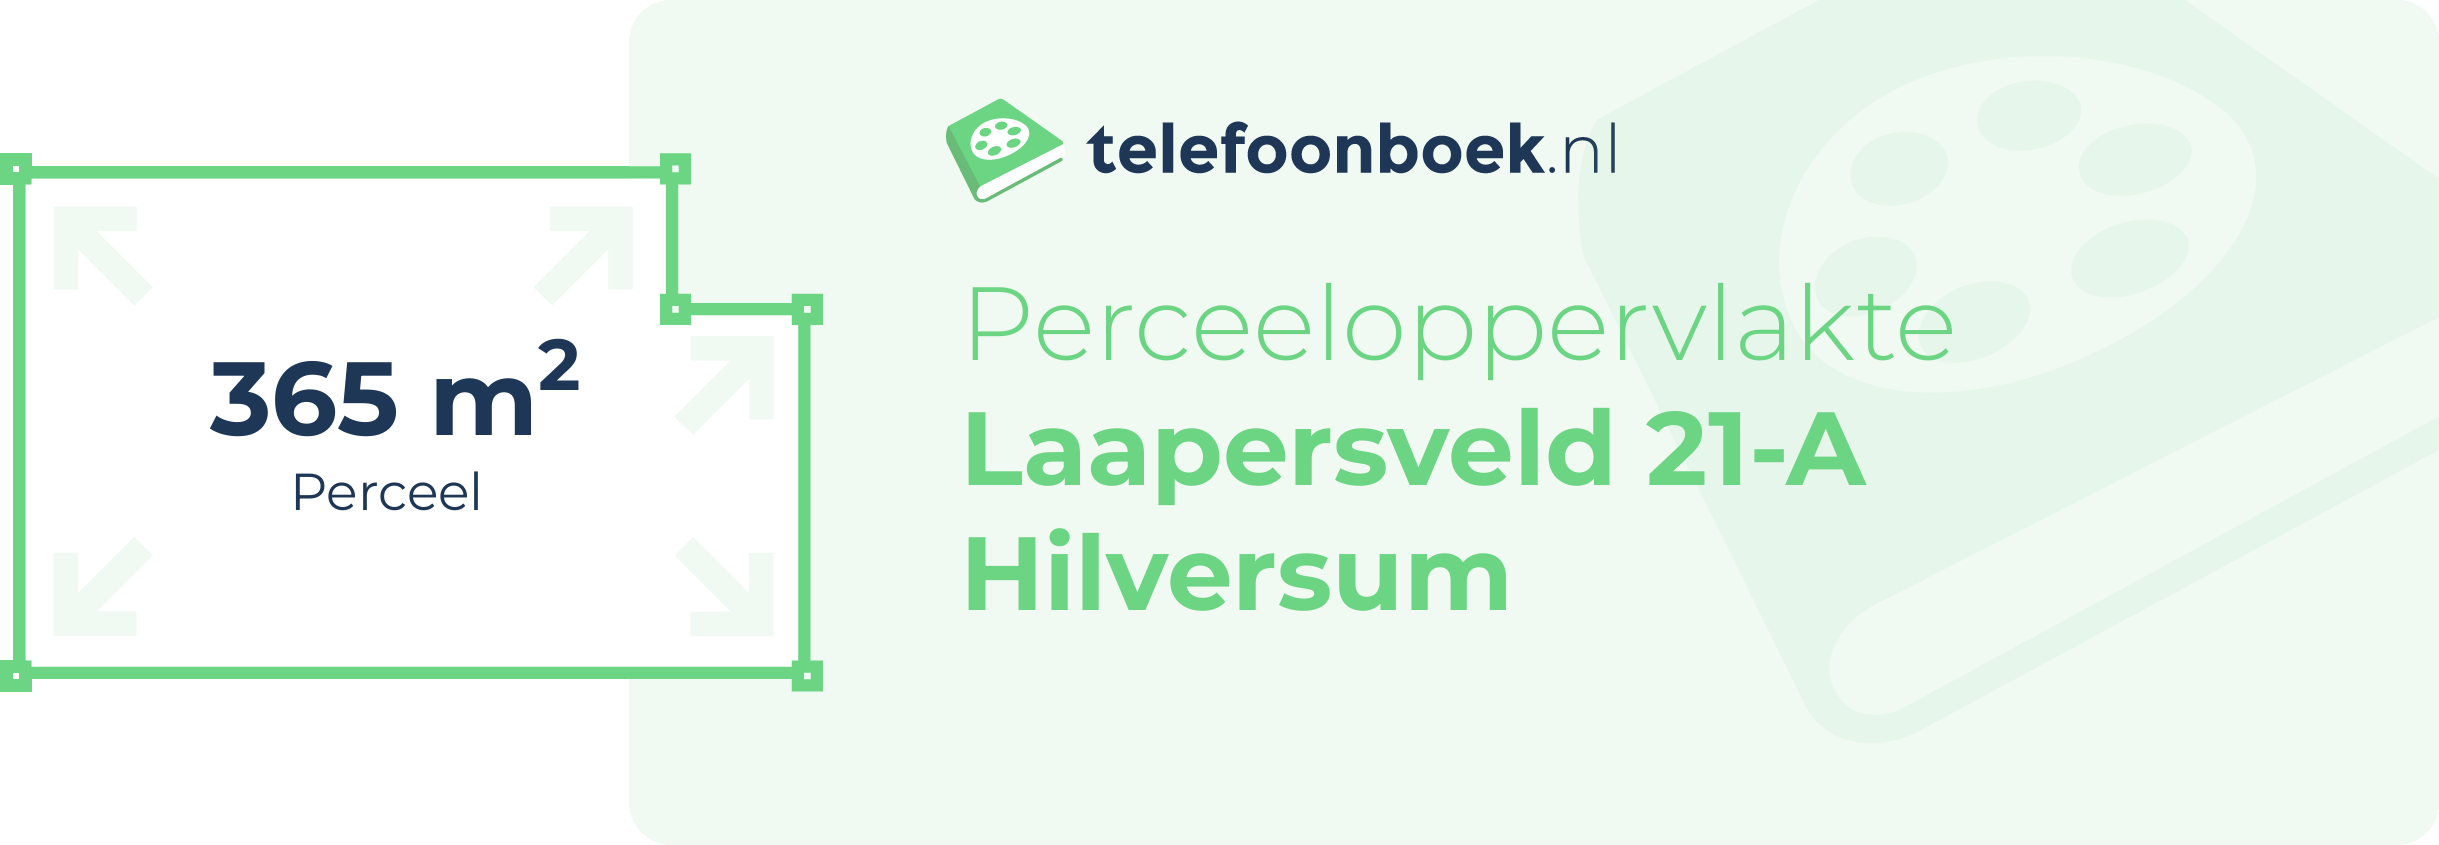 Perceeloppervlakte Laapersveld 21-A Hilversum